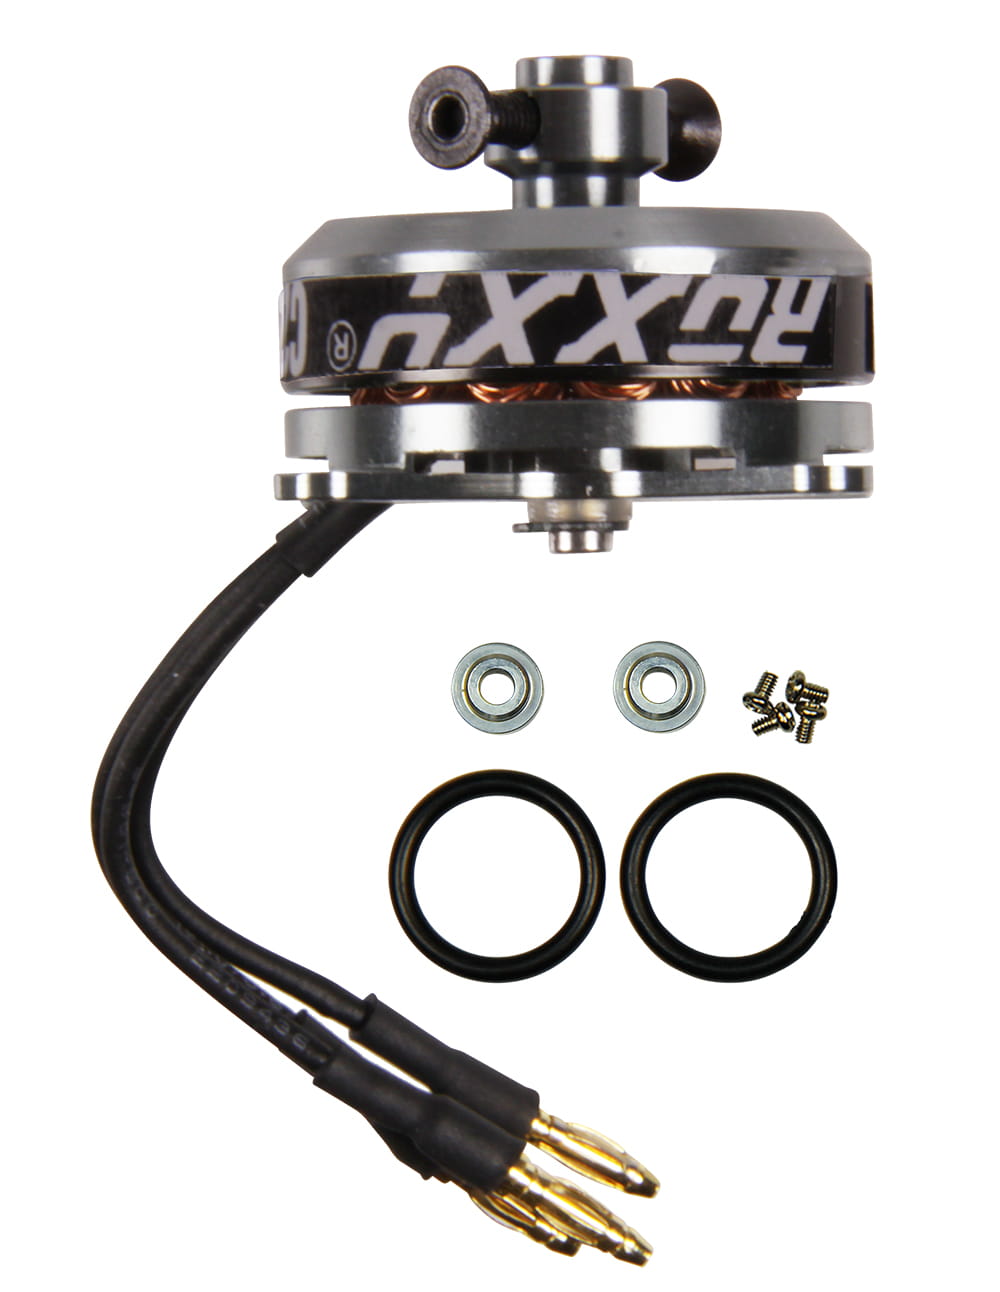 Multiplex ROXXY BL Brushless Motor Outrunner C27-13-1800kV